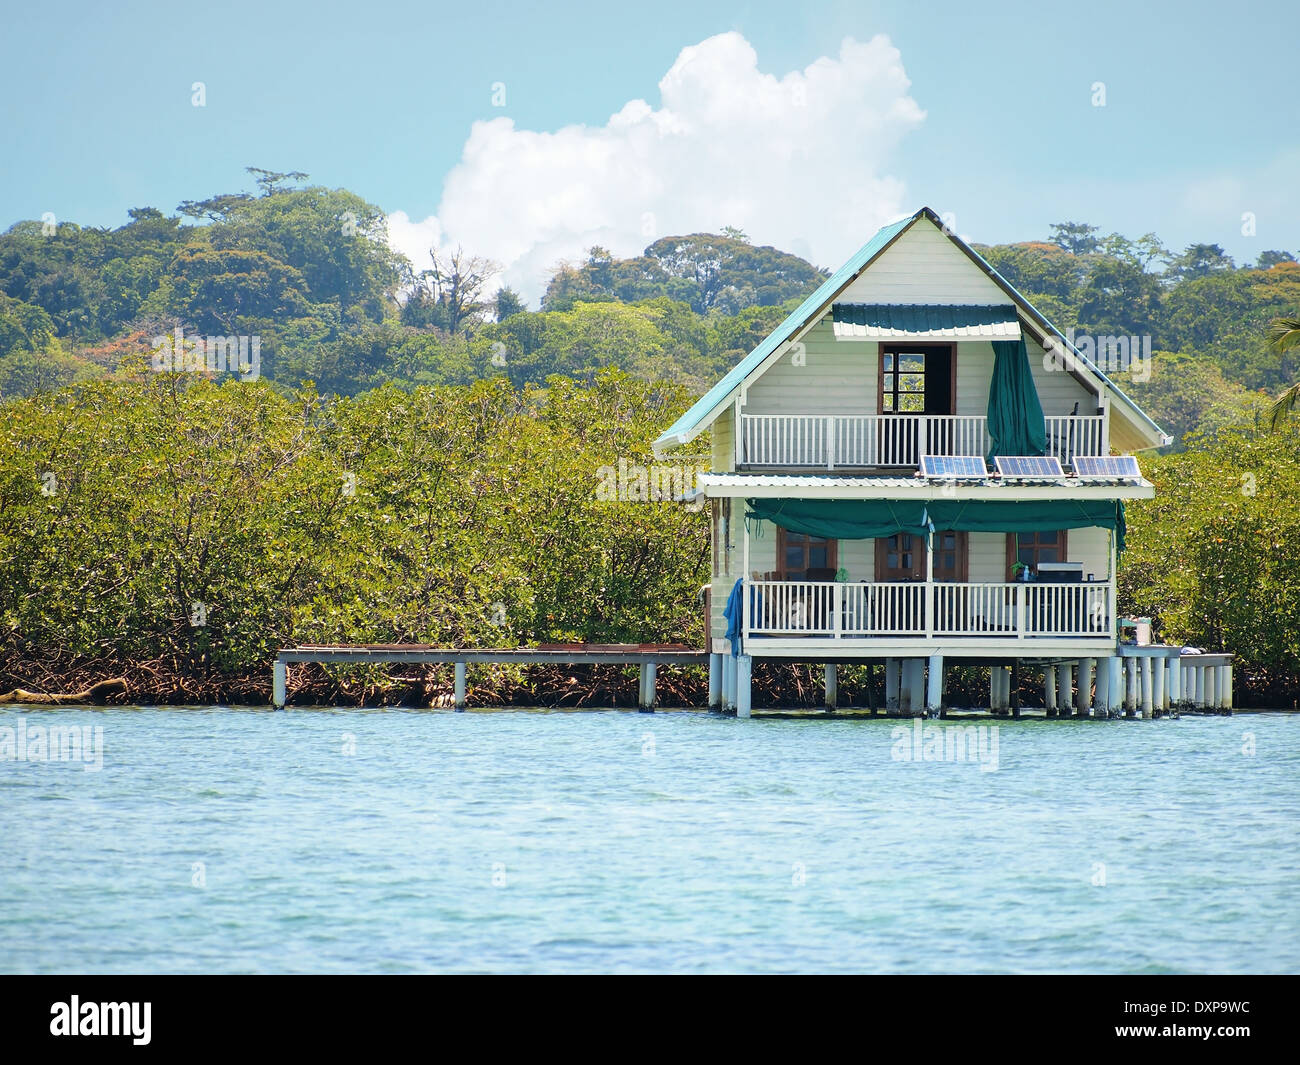 Maison sur pilotis sur l'eau avec des panneaux solaires et d'une végétation tropicale dense en arrière-plan, Bocas del Toro, Panama, la mer des Caraïbes Banque D'Images